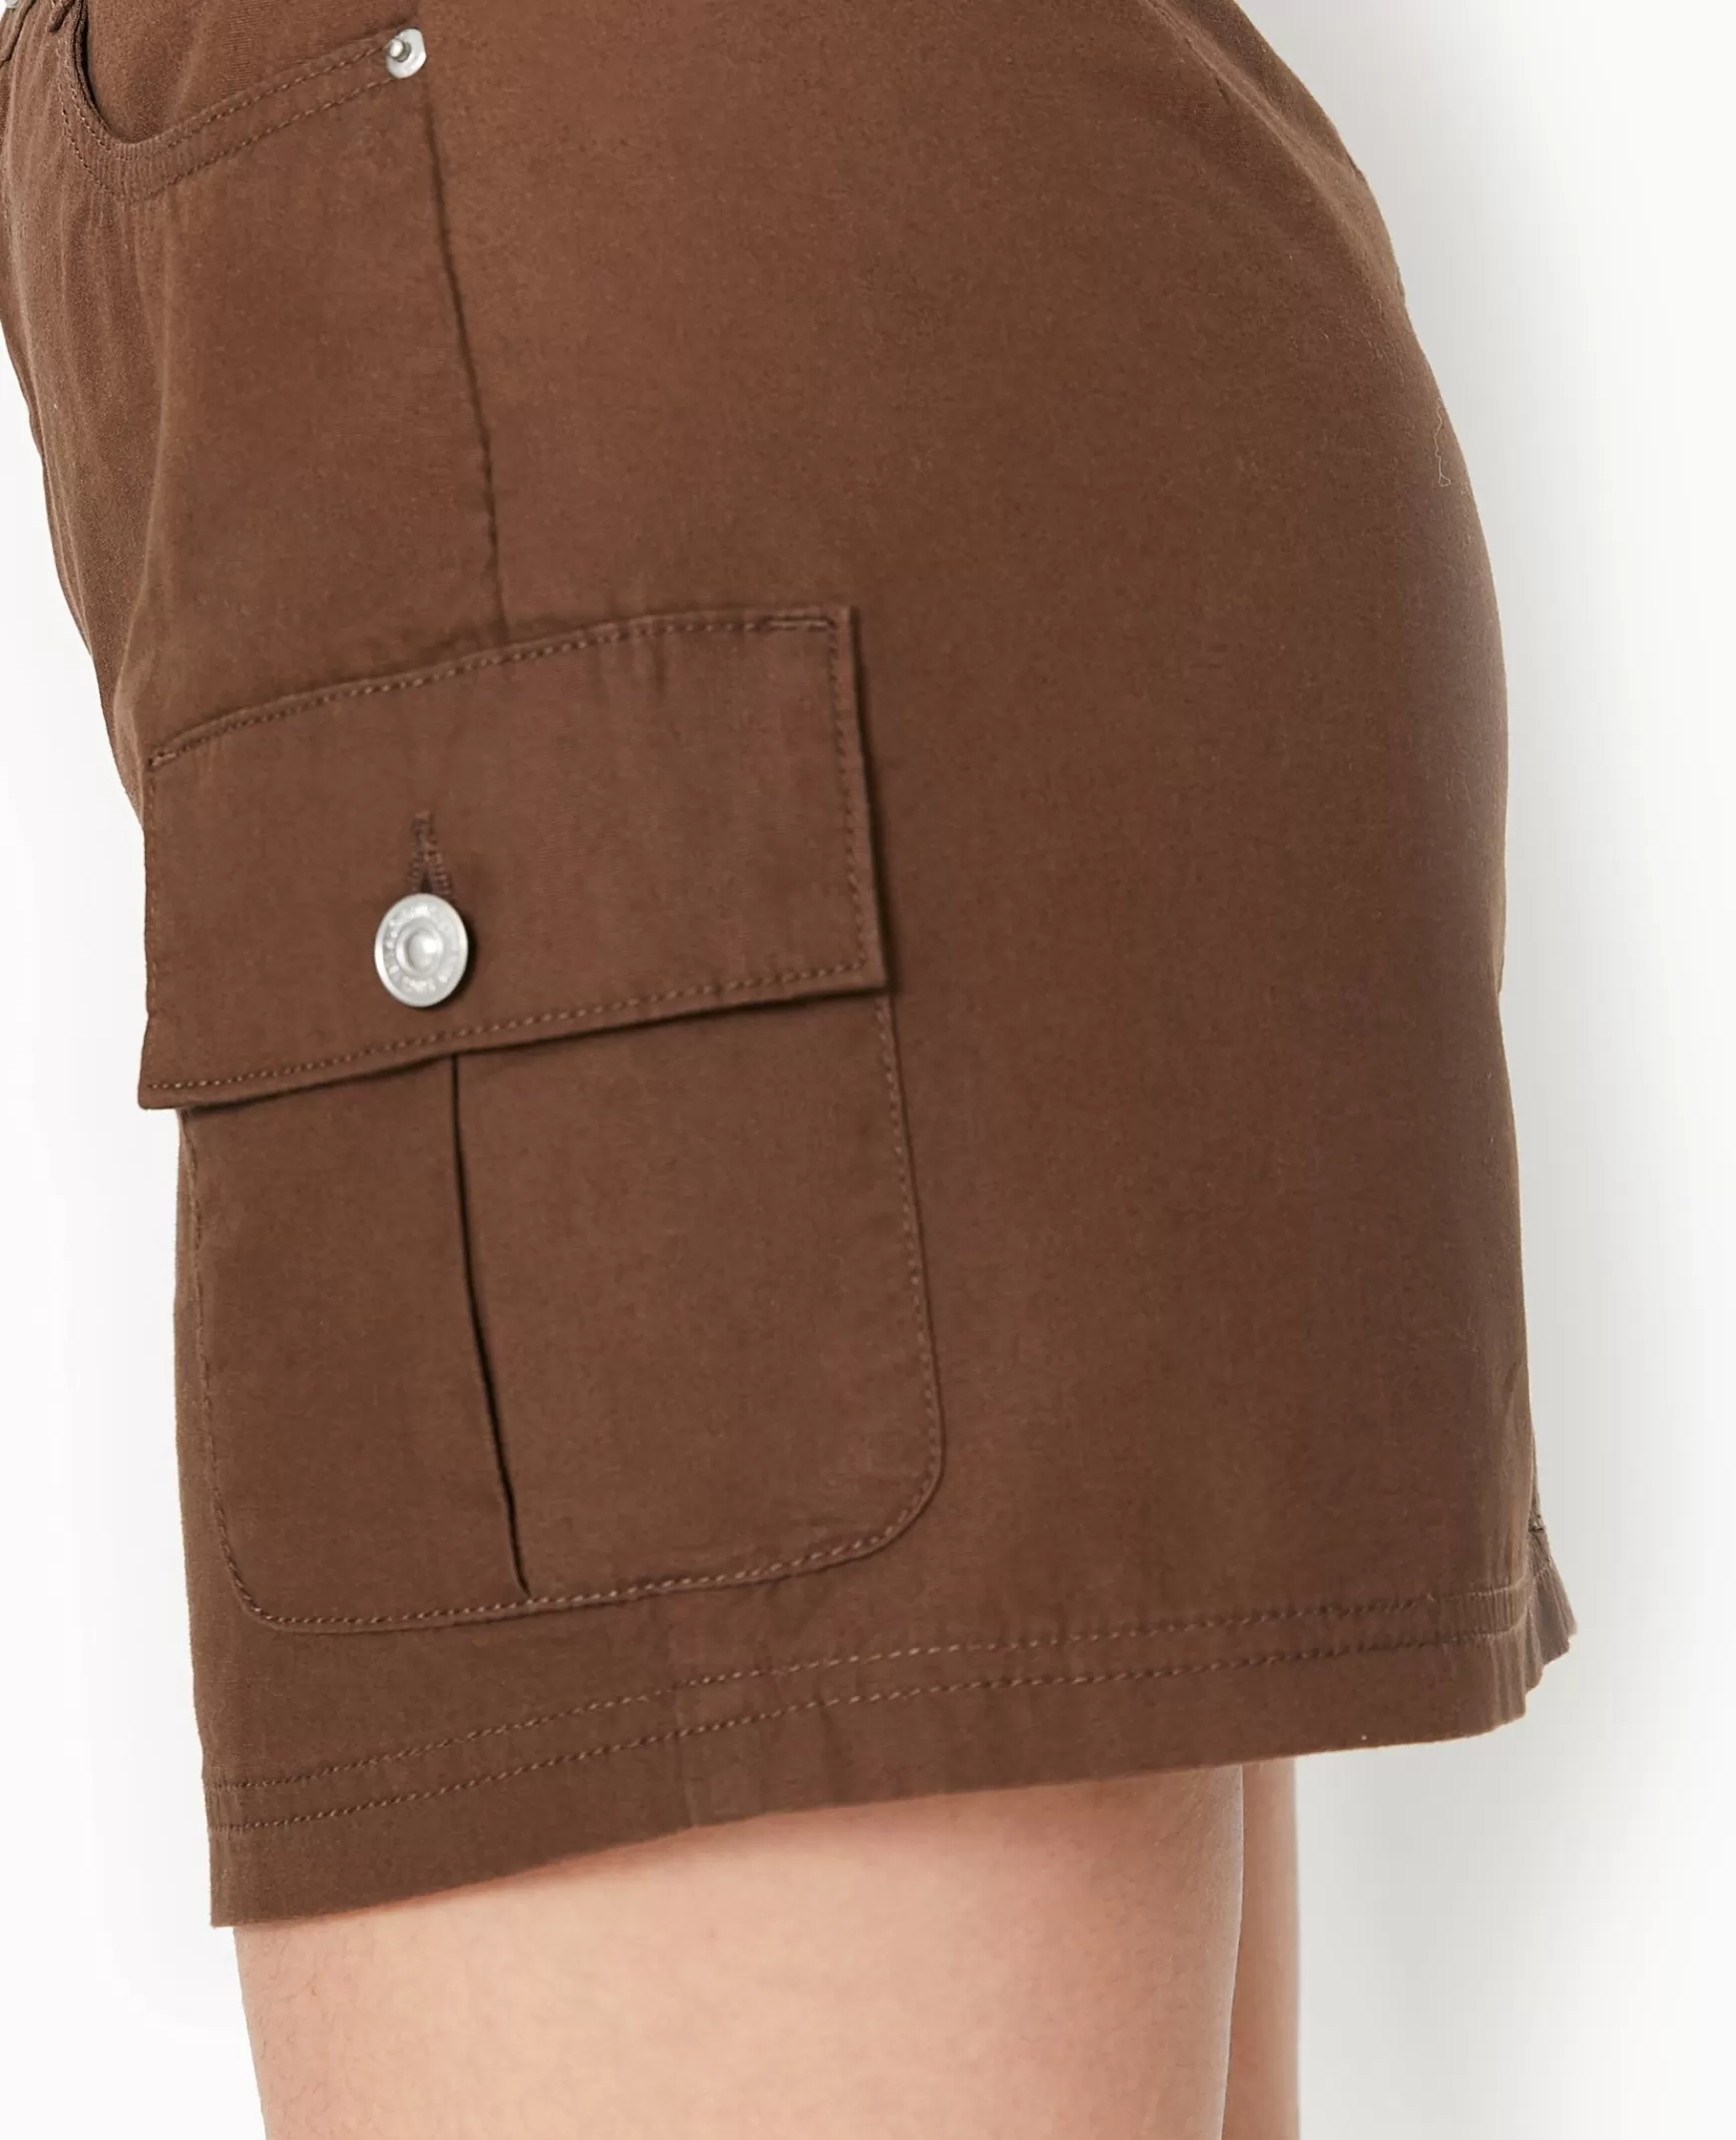 Pimkie Jupe courte avec poches plaques - Marron Store